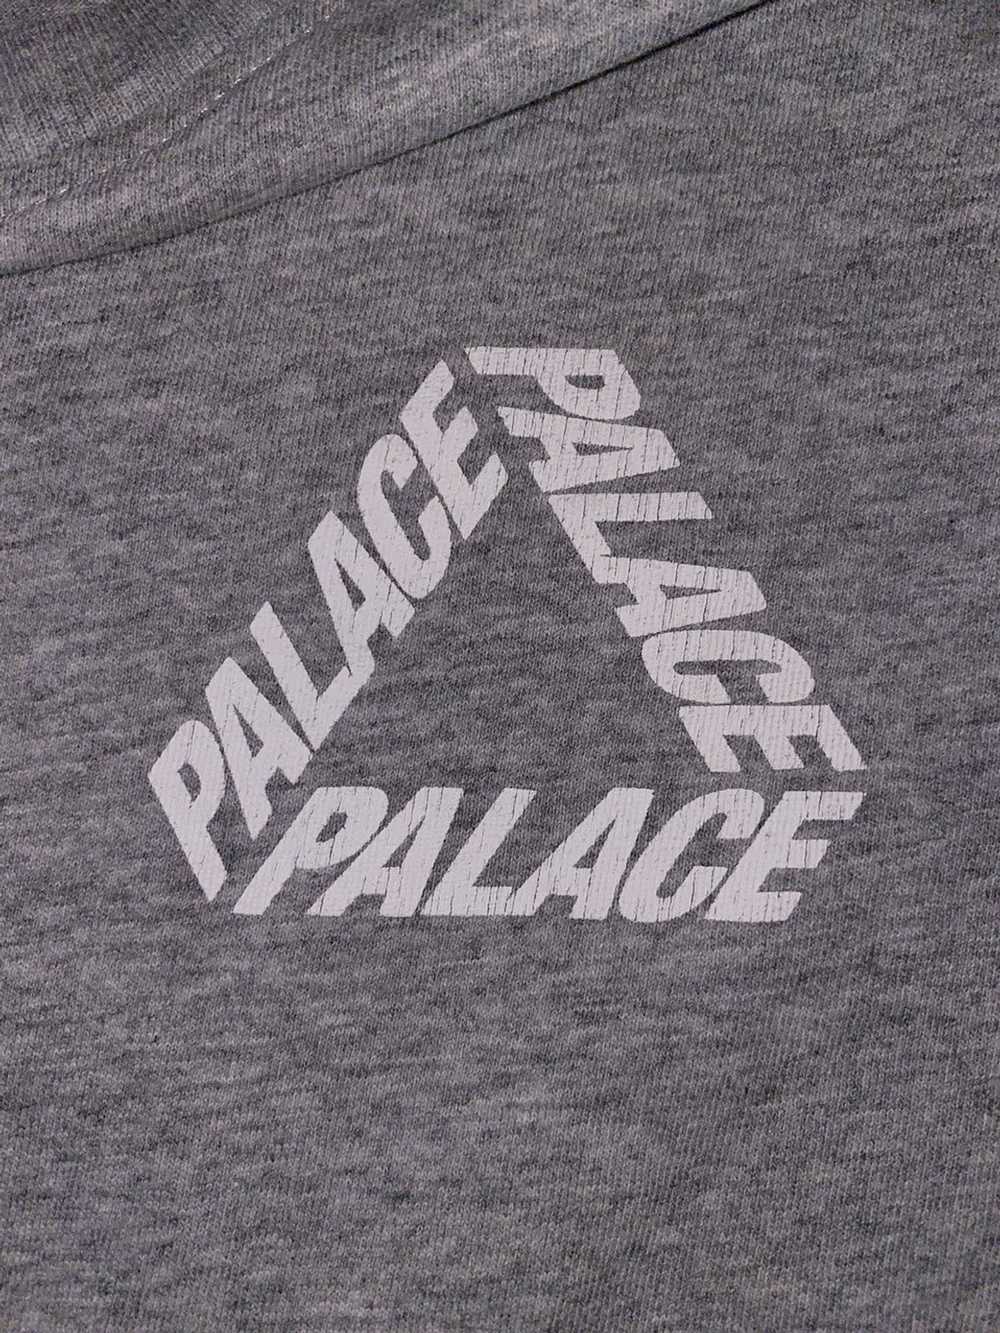 Palace 2016 Palace P3 Font Tri-Ferg T-shirt GREY … - image 8